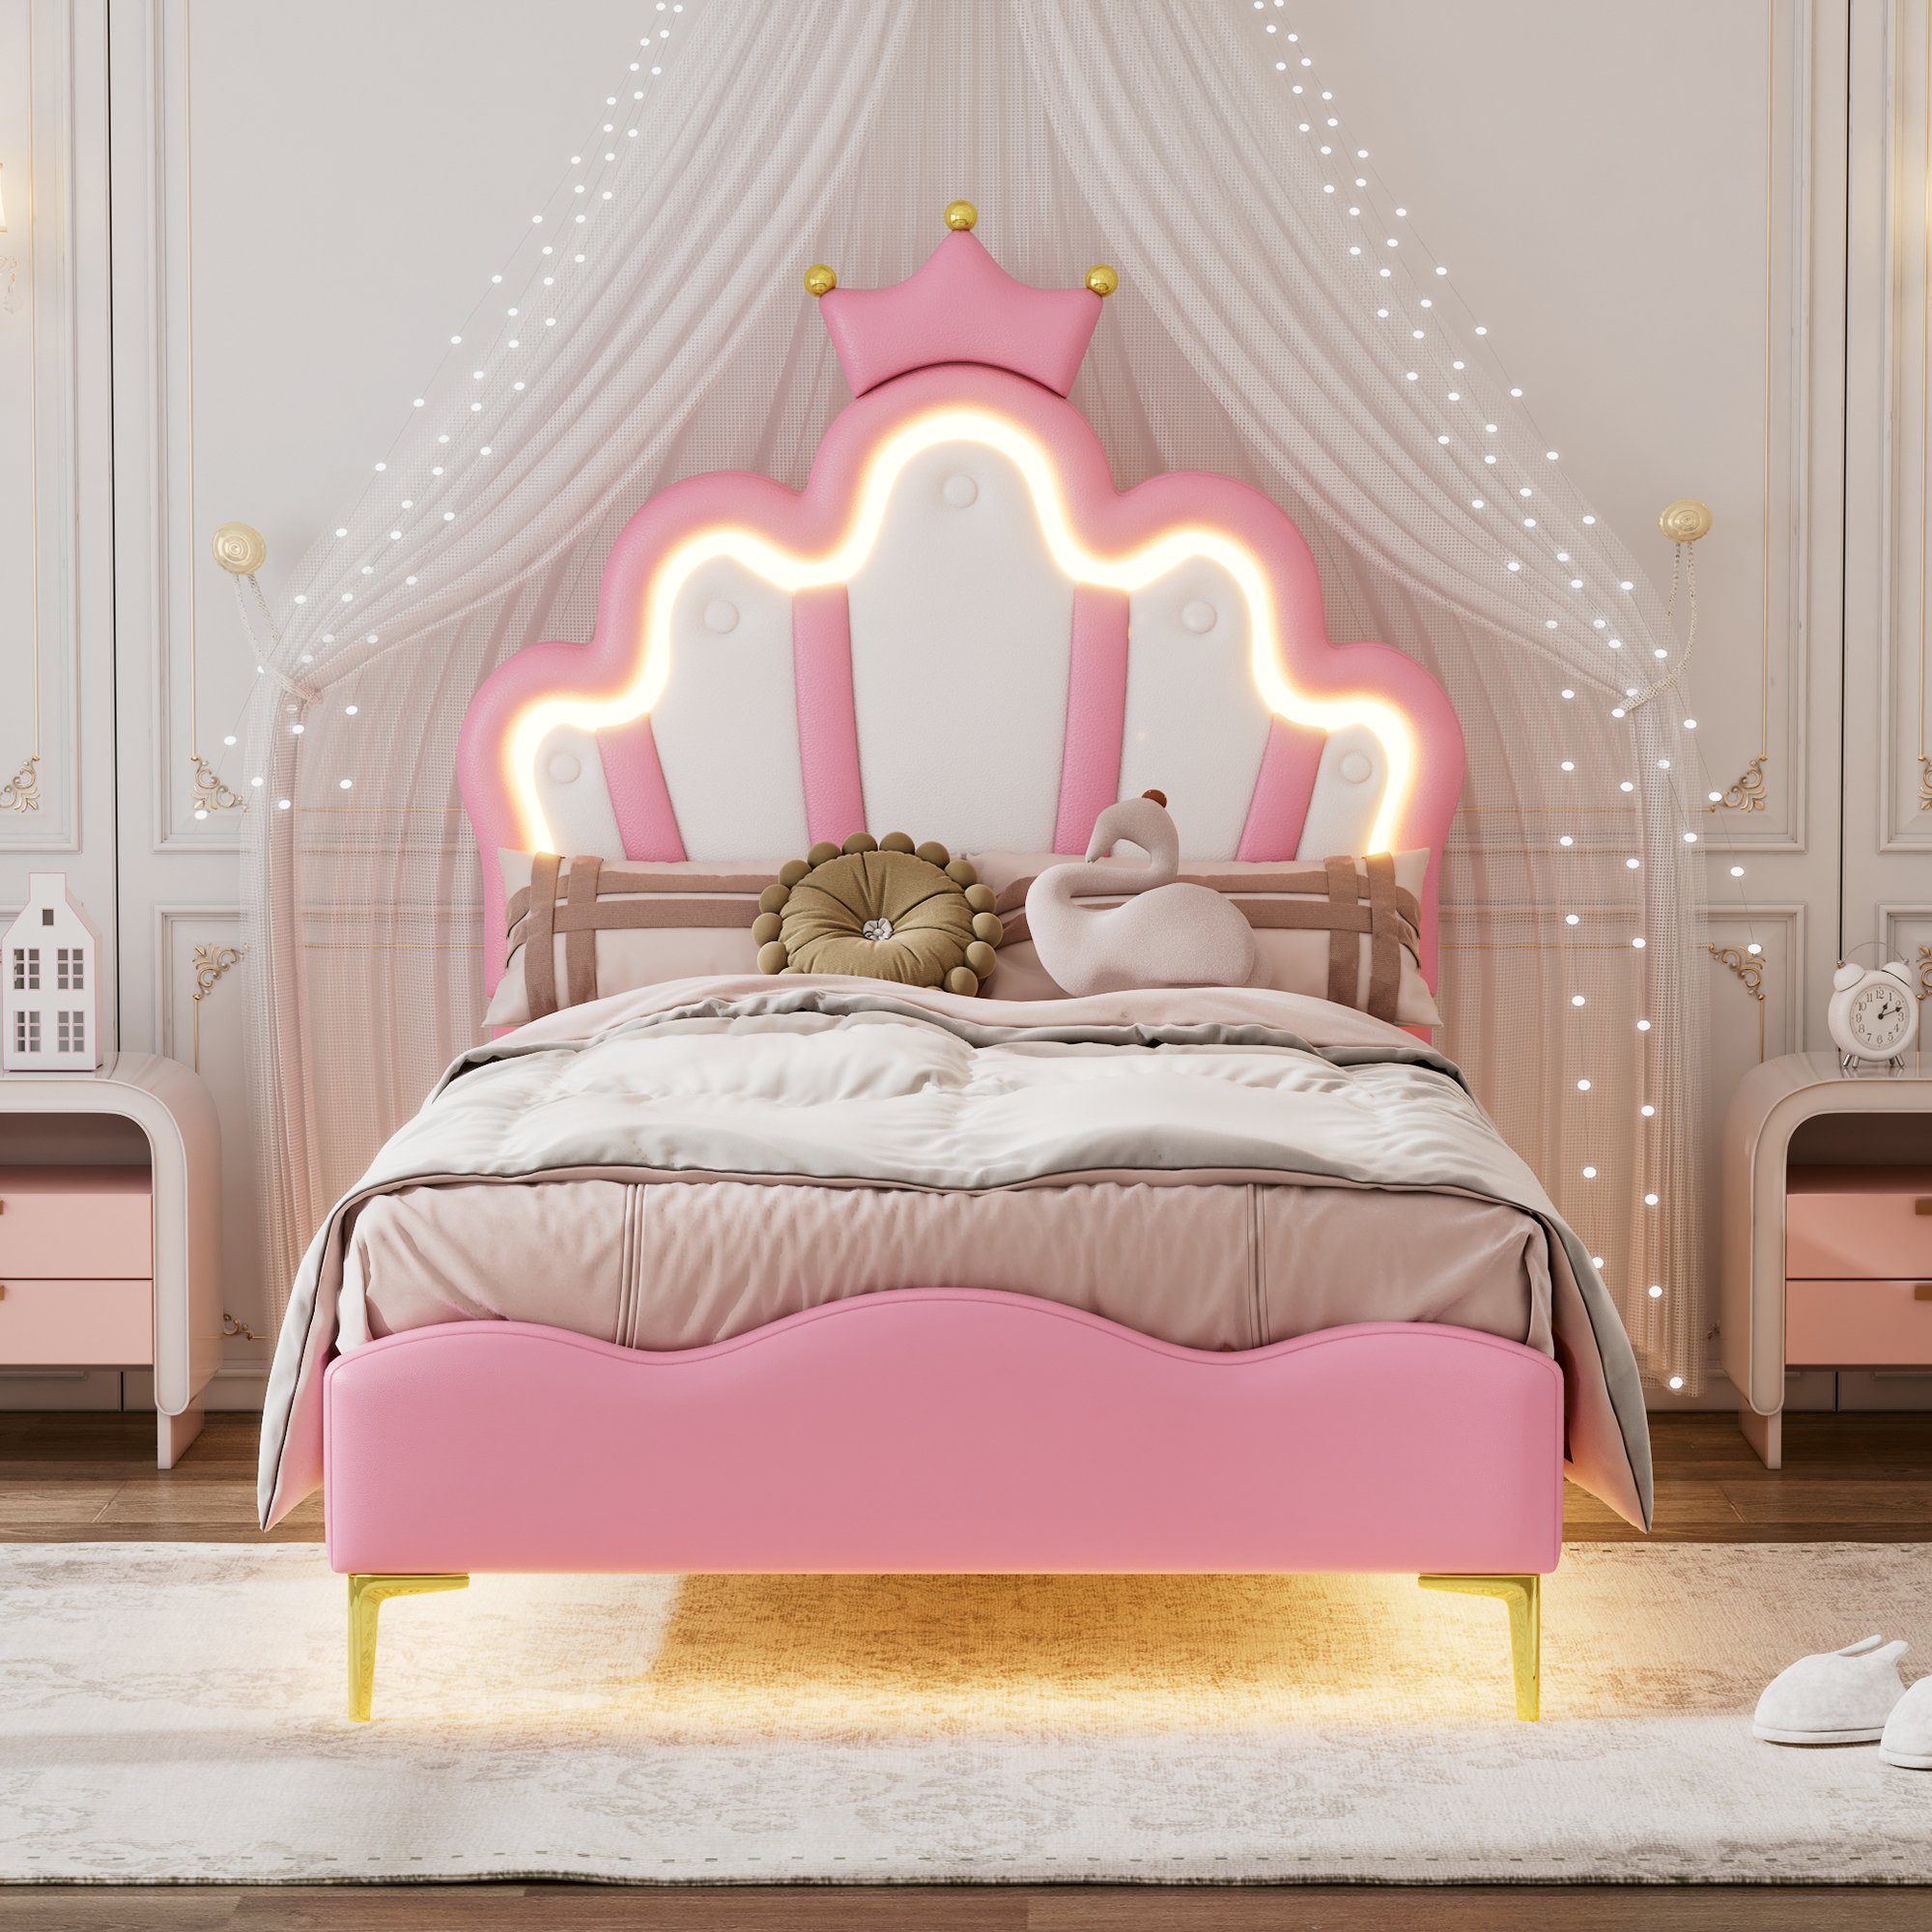 Flieks Polsterbett, LED Kinderbett Einzelbett mit krone-Form Prinzessinnenbett 90x200cm